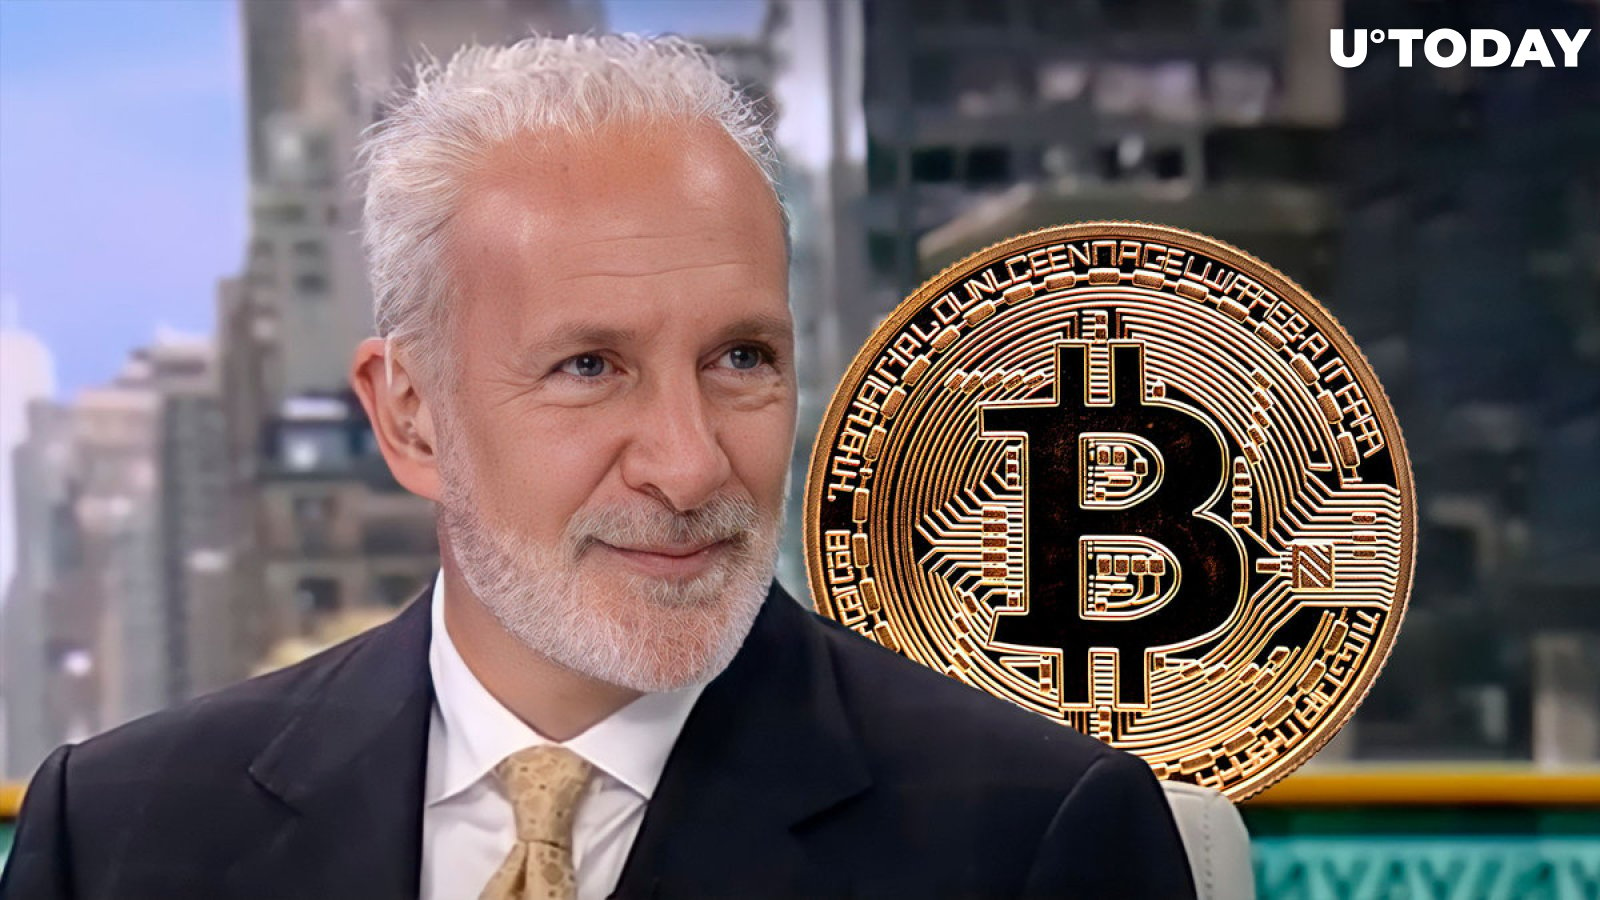 Schiff Calls Bitcoin Buyers 'Dumb'